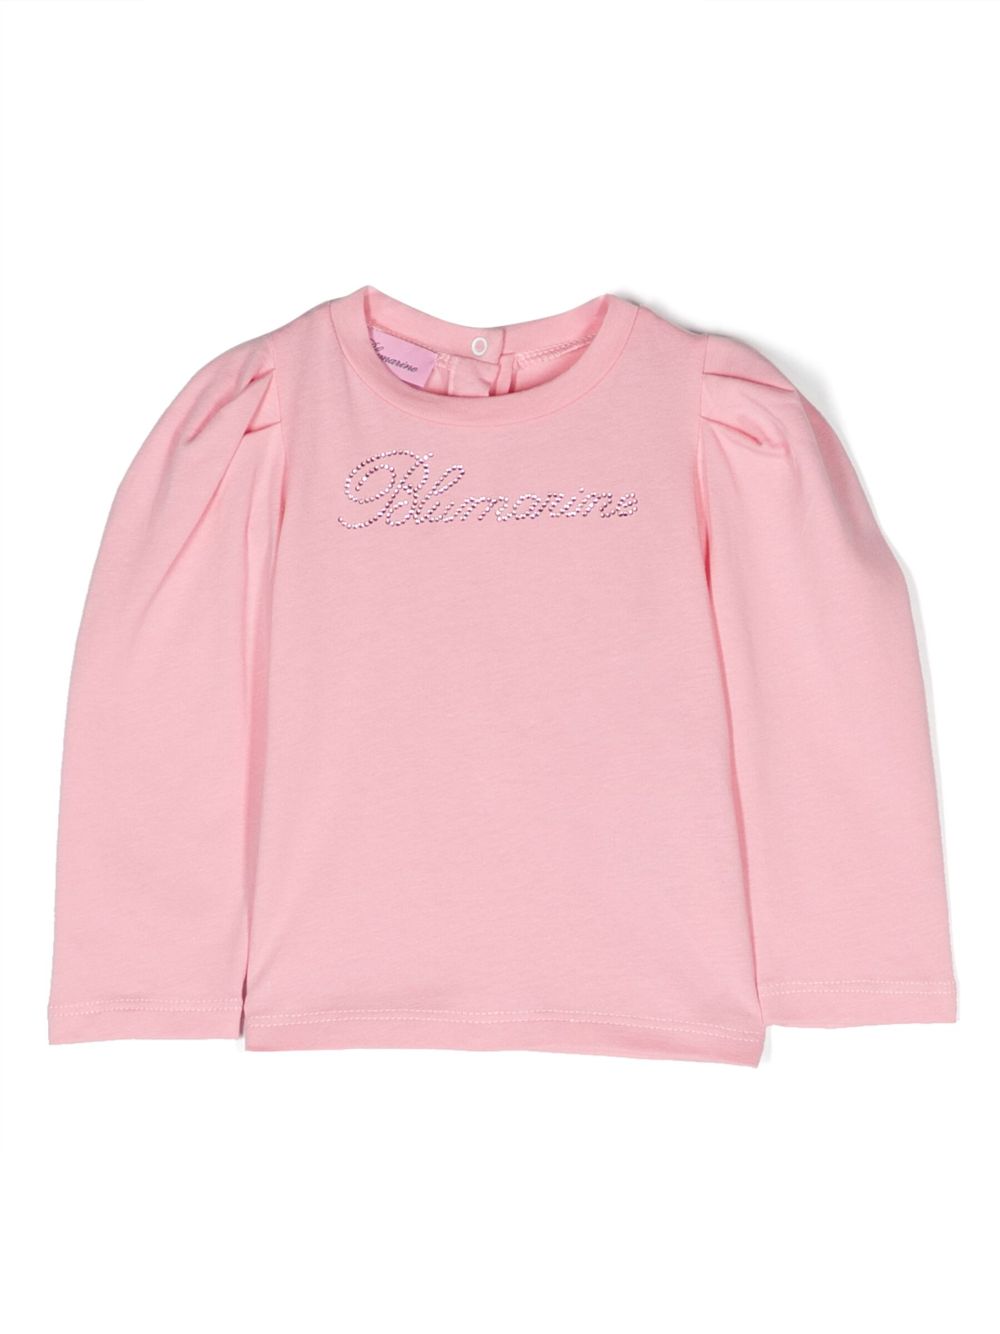 T-shirt rosa neonata